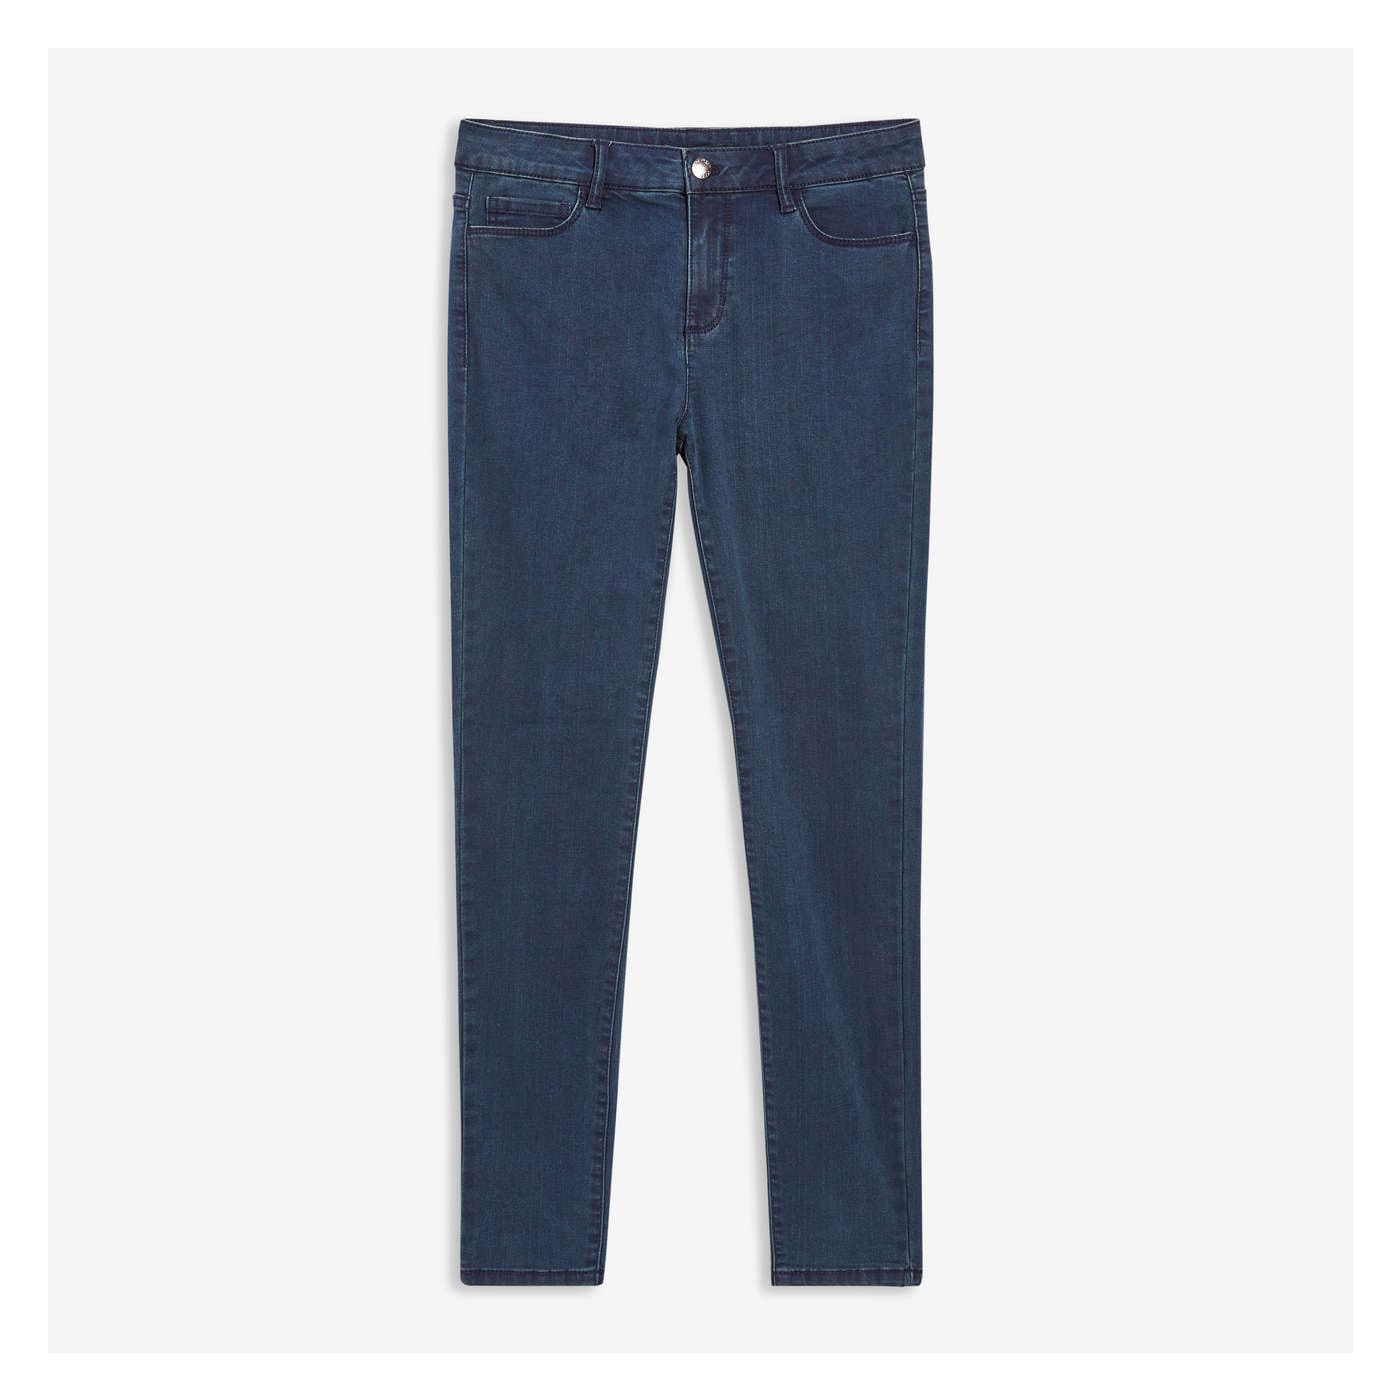 Buy Blue Jeans & Jeggings for Women by YOUSTA Online